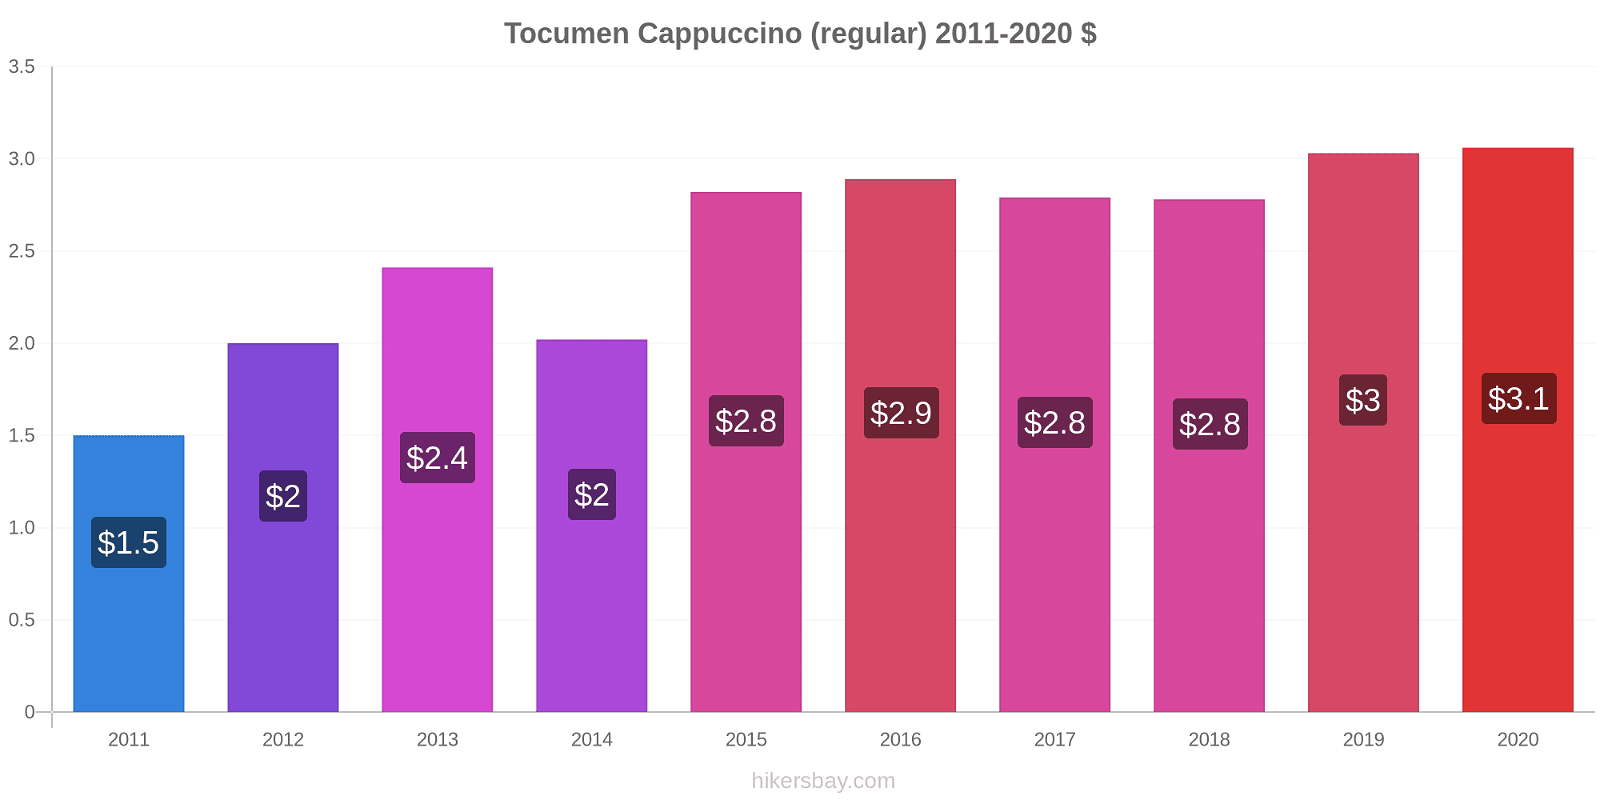 Tocumen price changes Cappuccino (regular) hikersbay.com